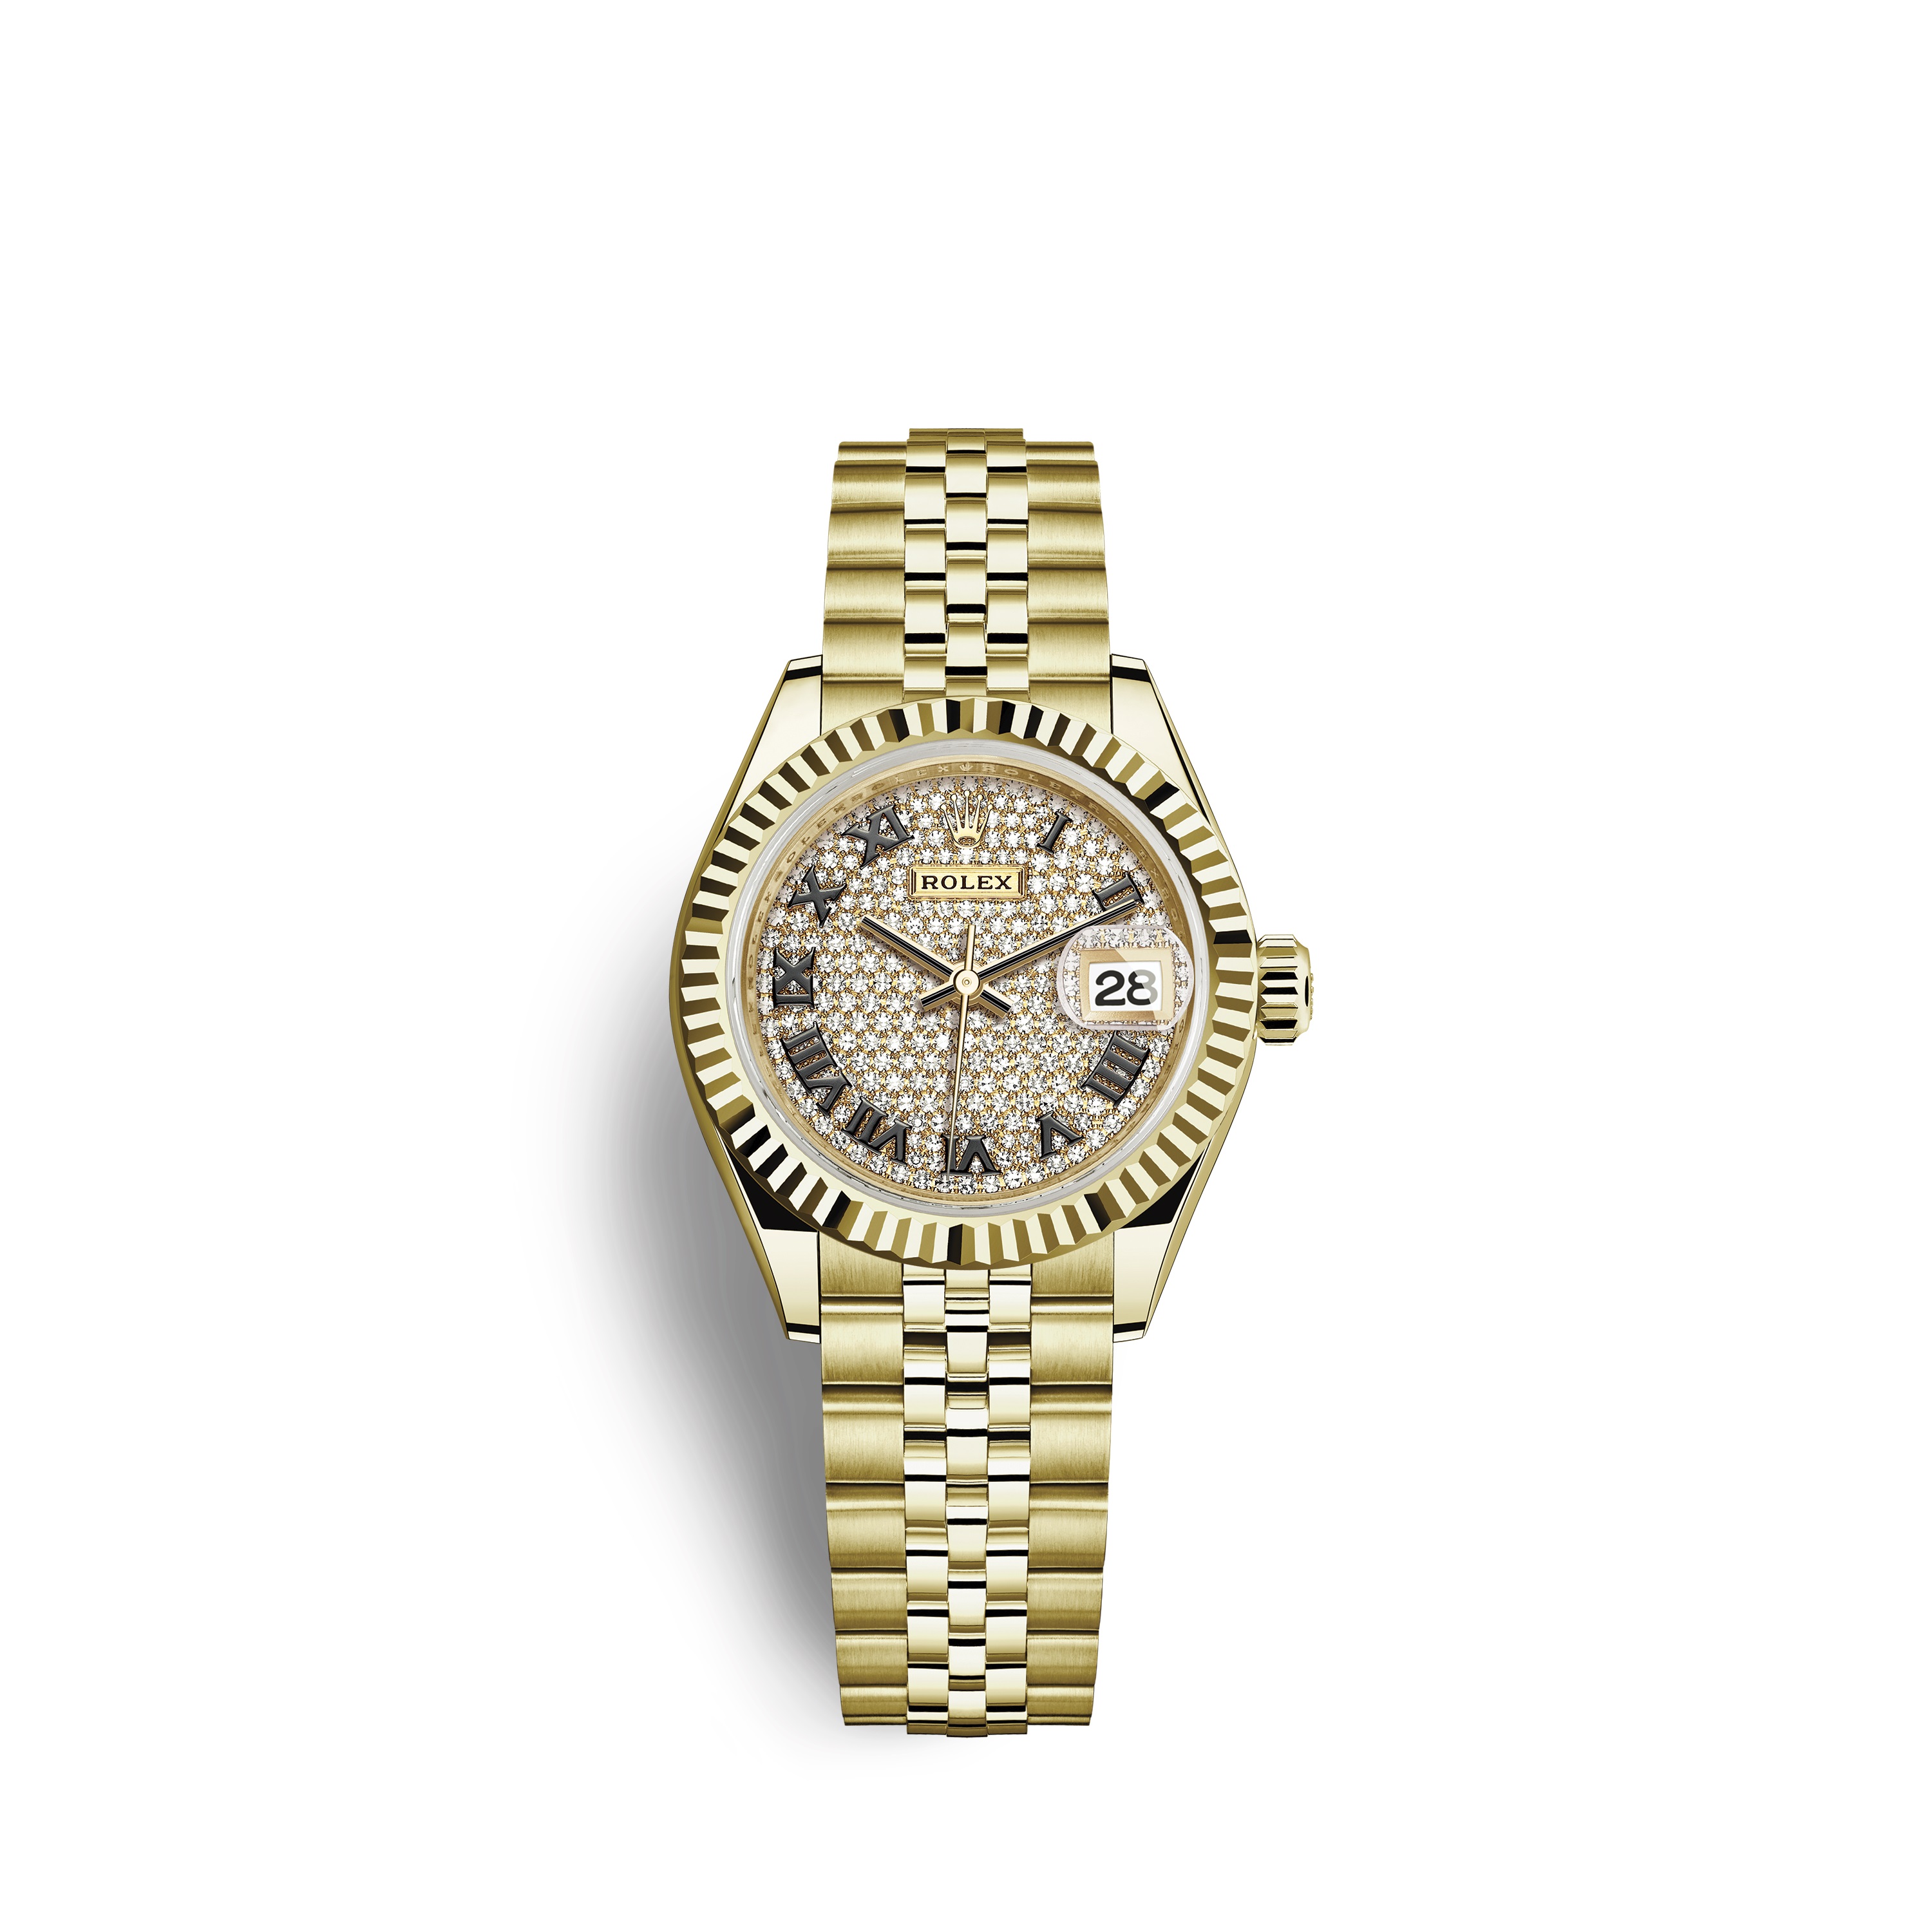 Lady-Datejust 28 279178 Gold Watch (Diamond-Paved)